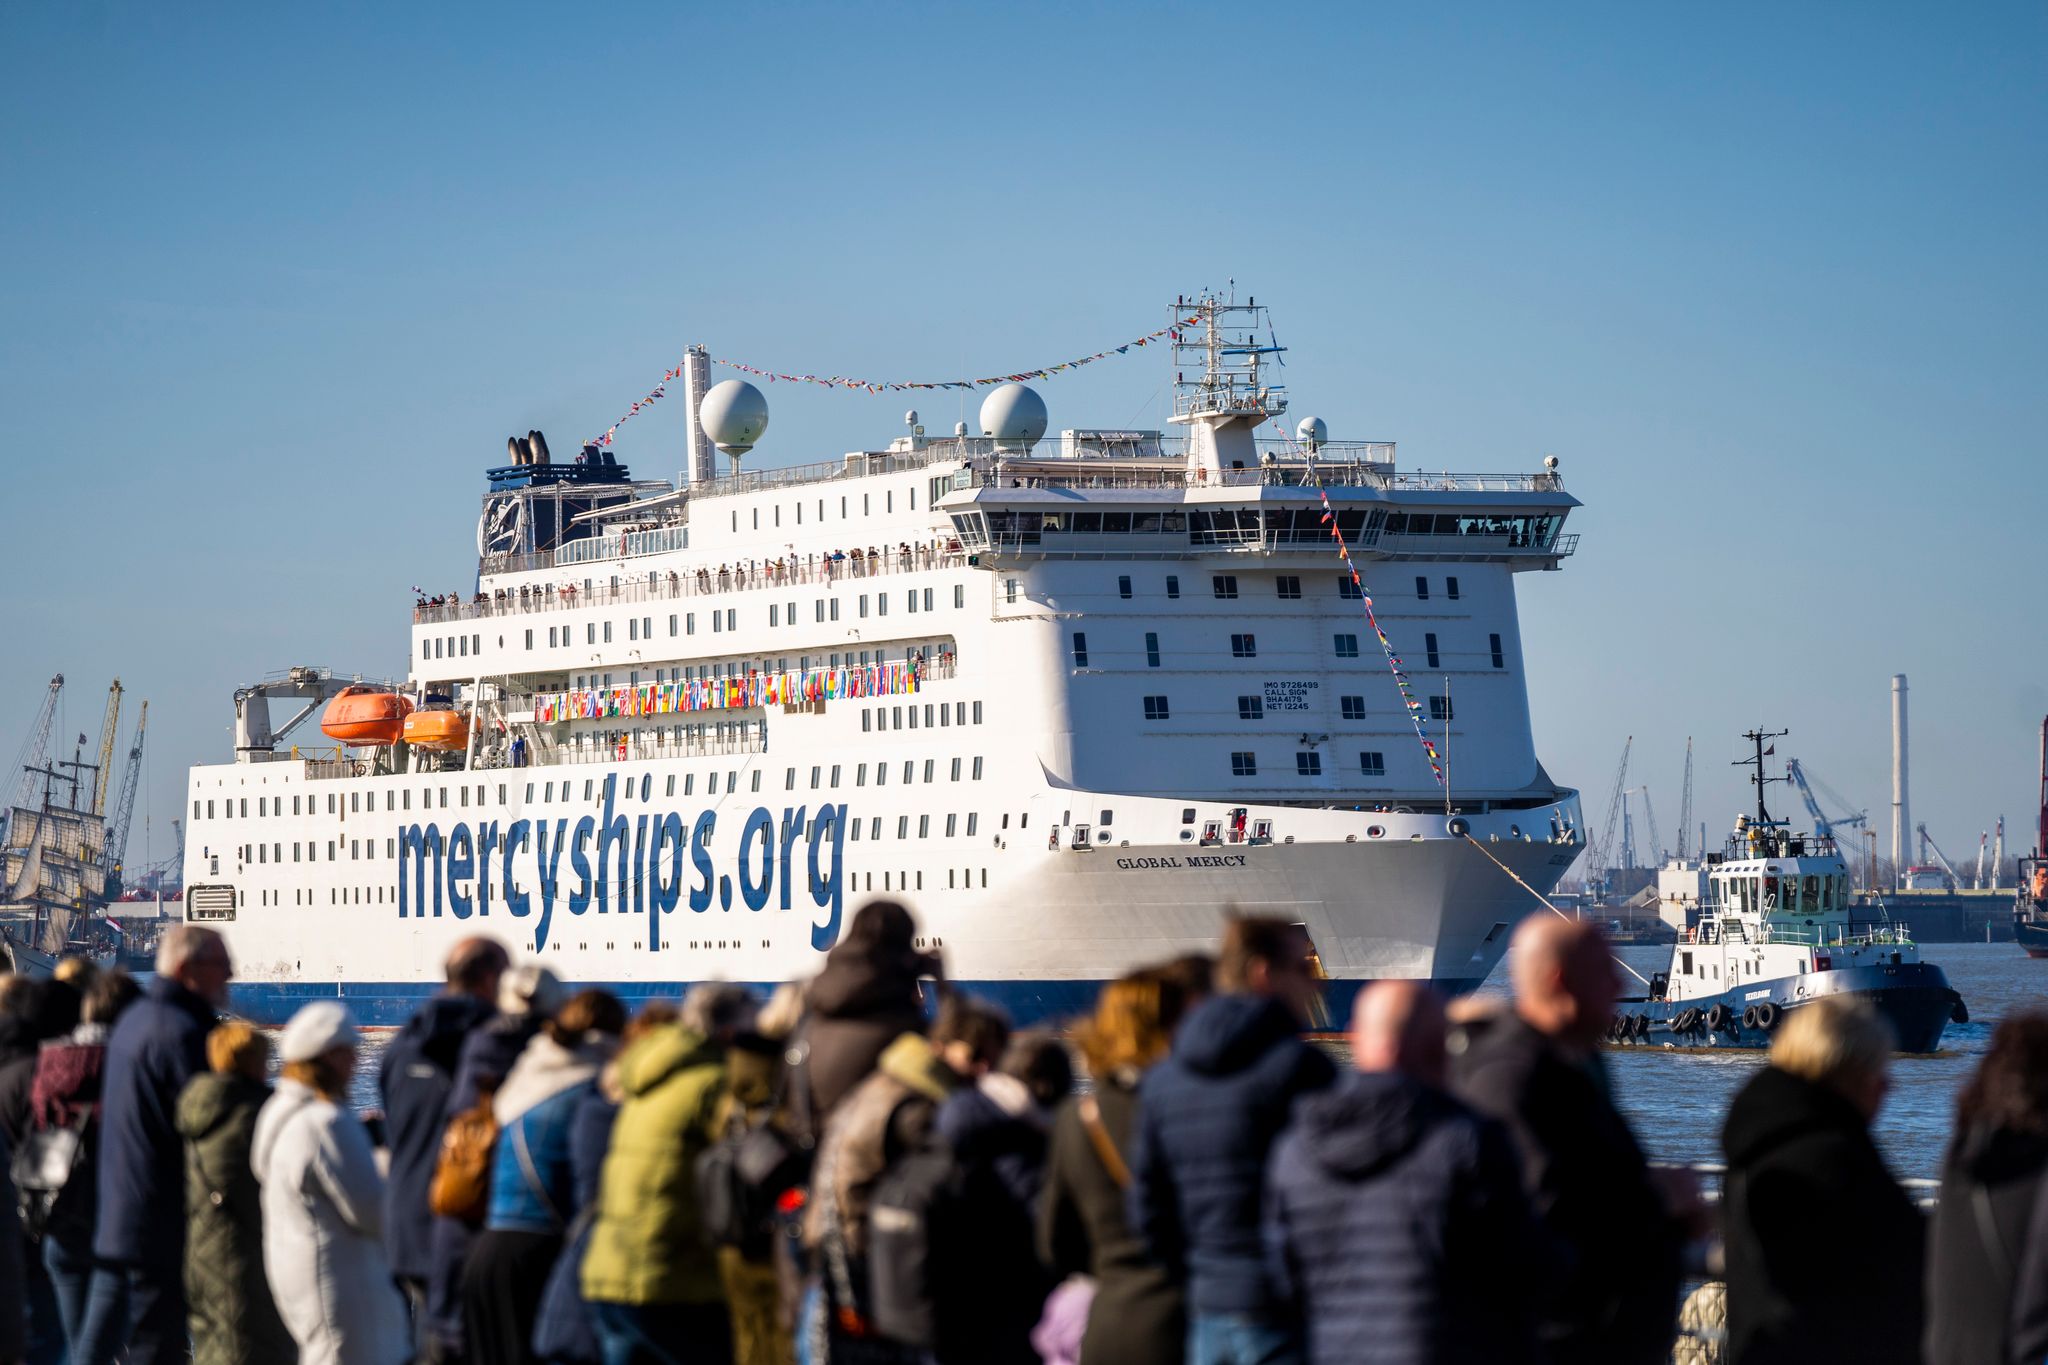 Het trok veel bekijks 26 februari, toen het schip aankwam in Rotterdam. (Foto Mercy Ships)